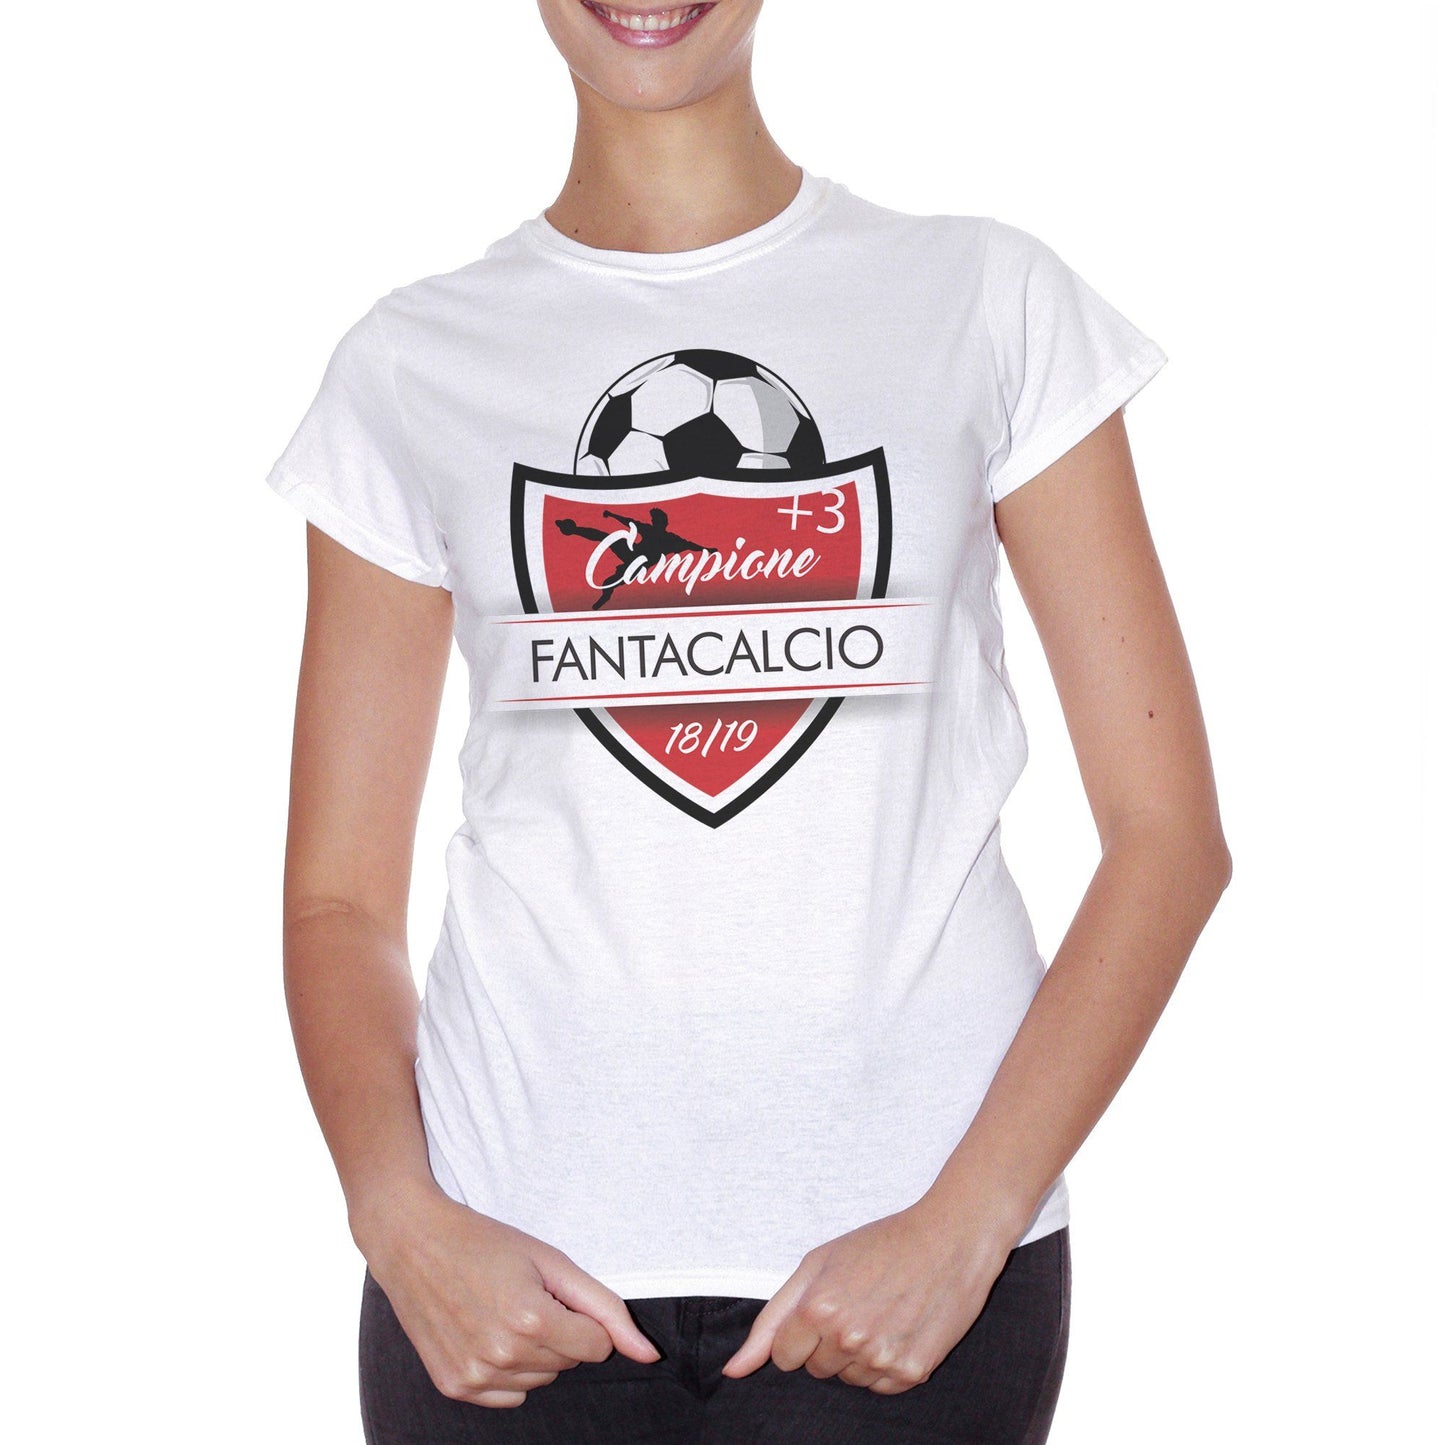 Lavender T-Shirt Fantacalcio Calcio Campione 3 2018 2019 - SPORT CucShop